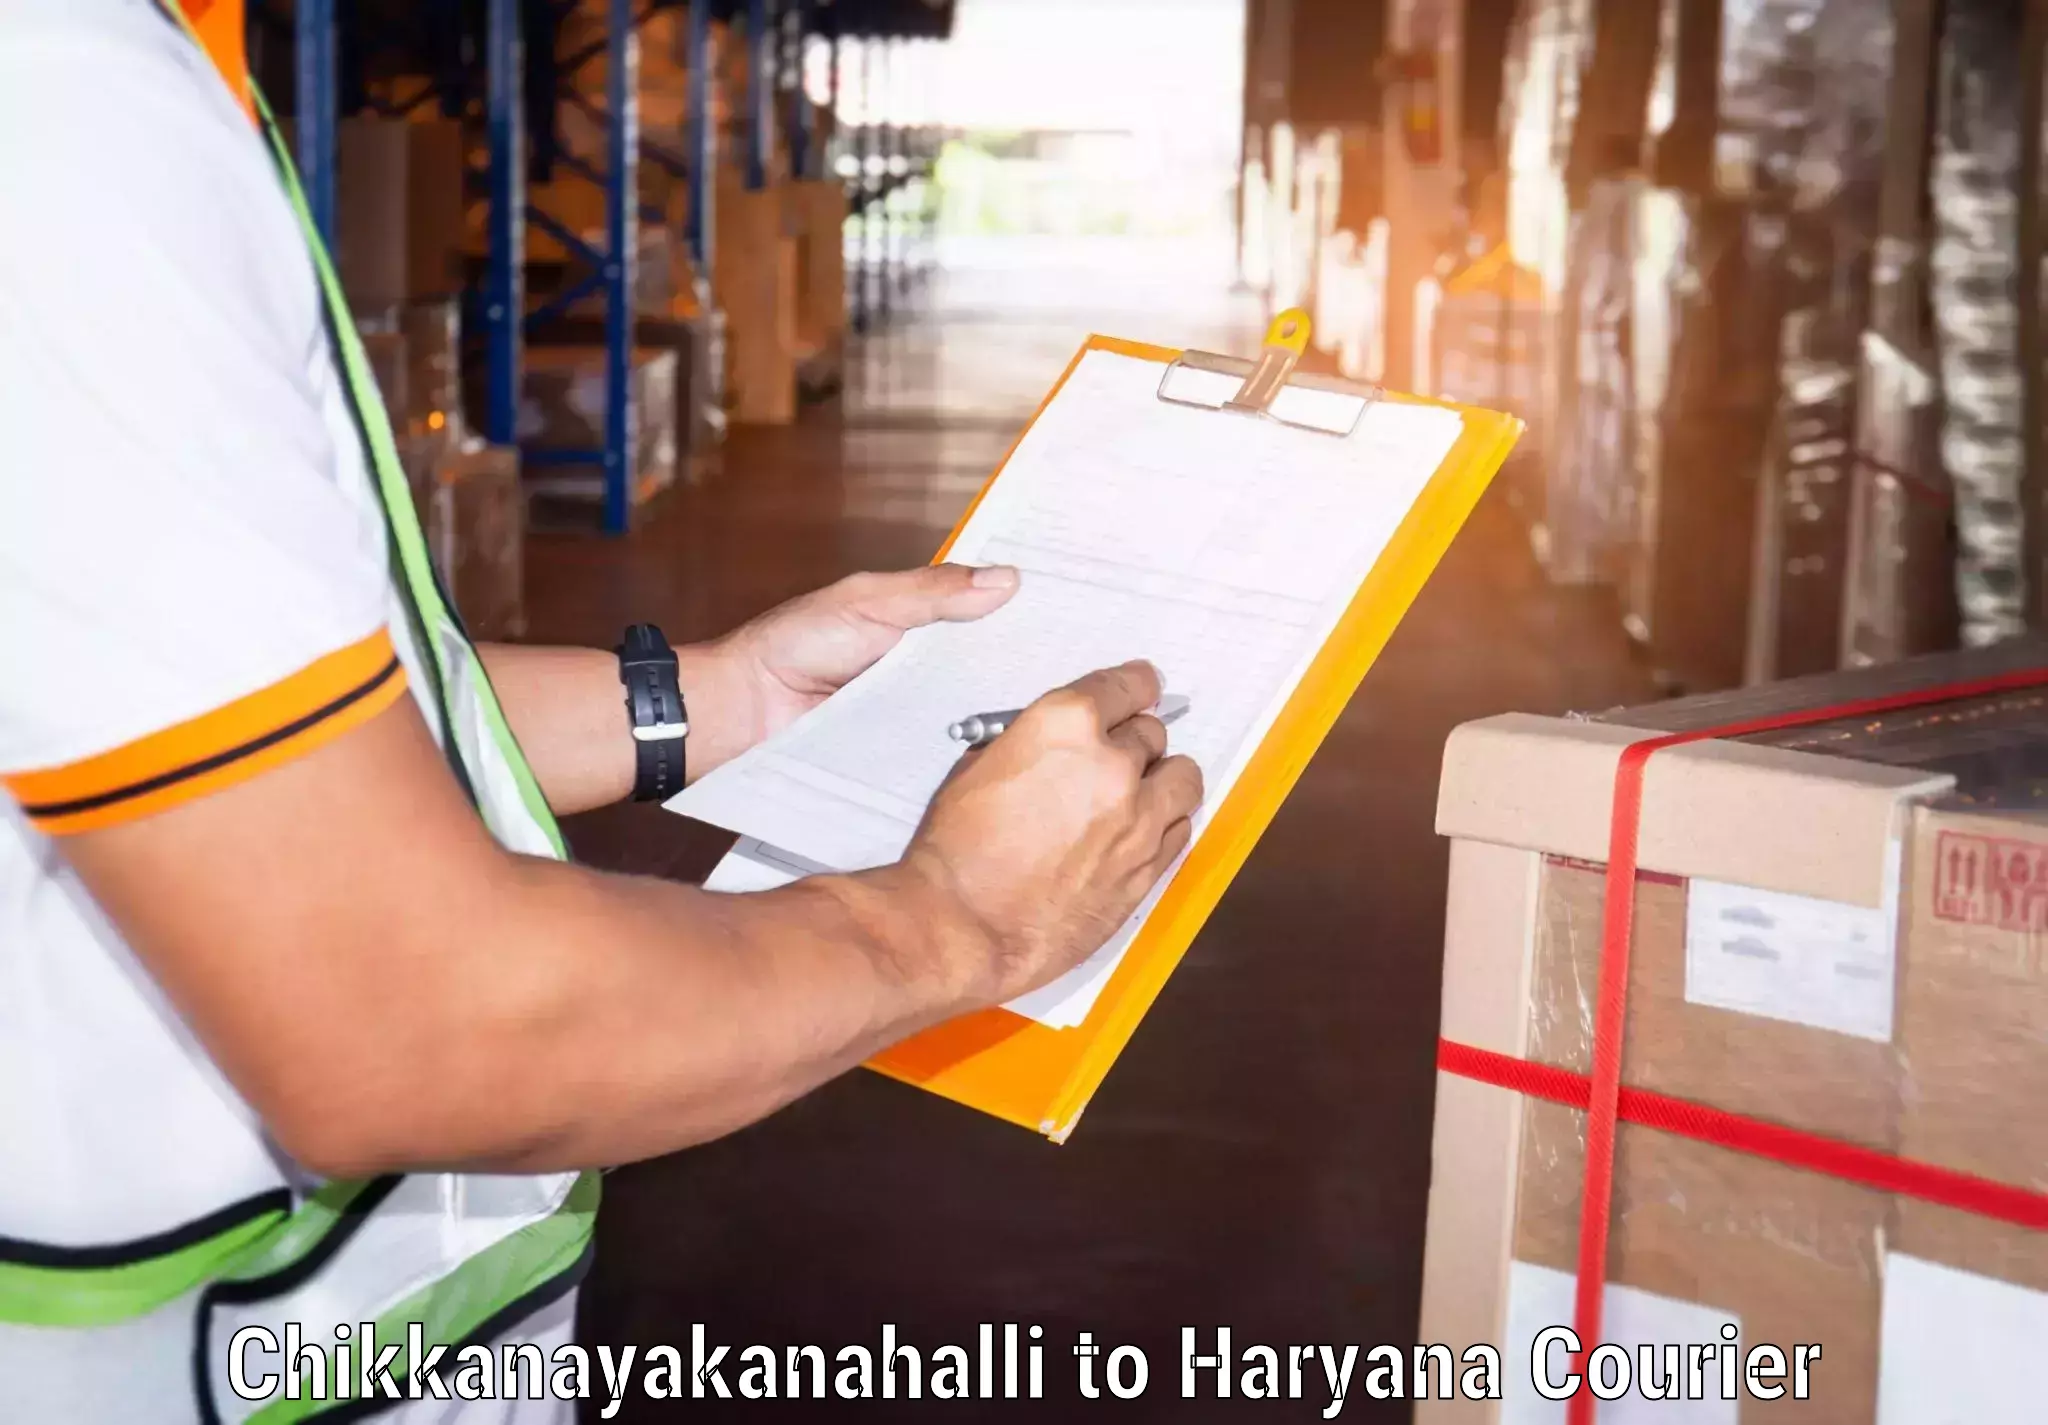 Professional courier services Chikkanayakanahalli to Kurukshetra University